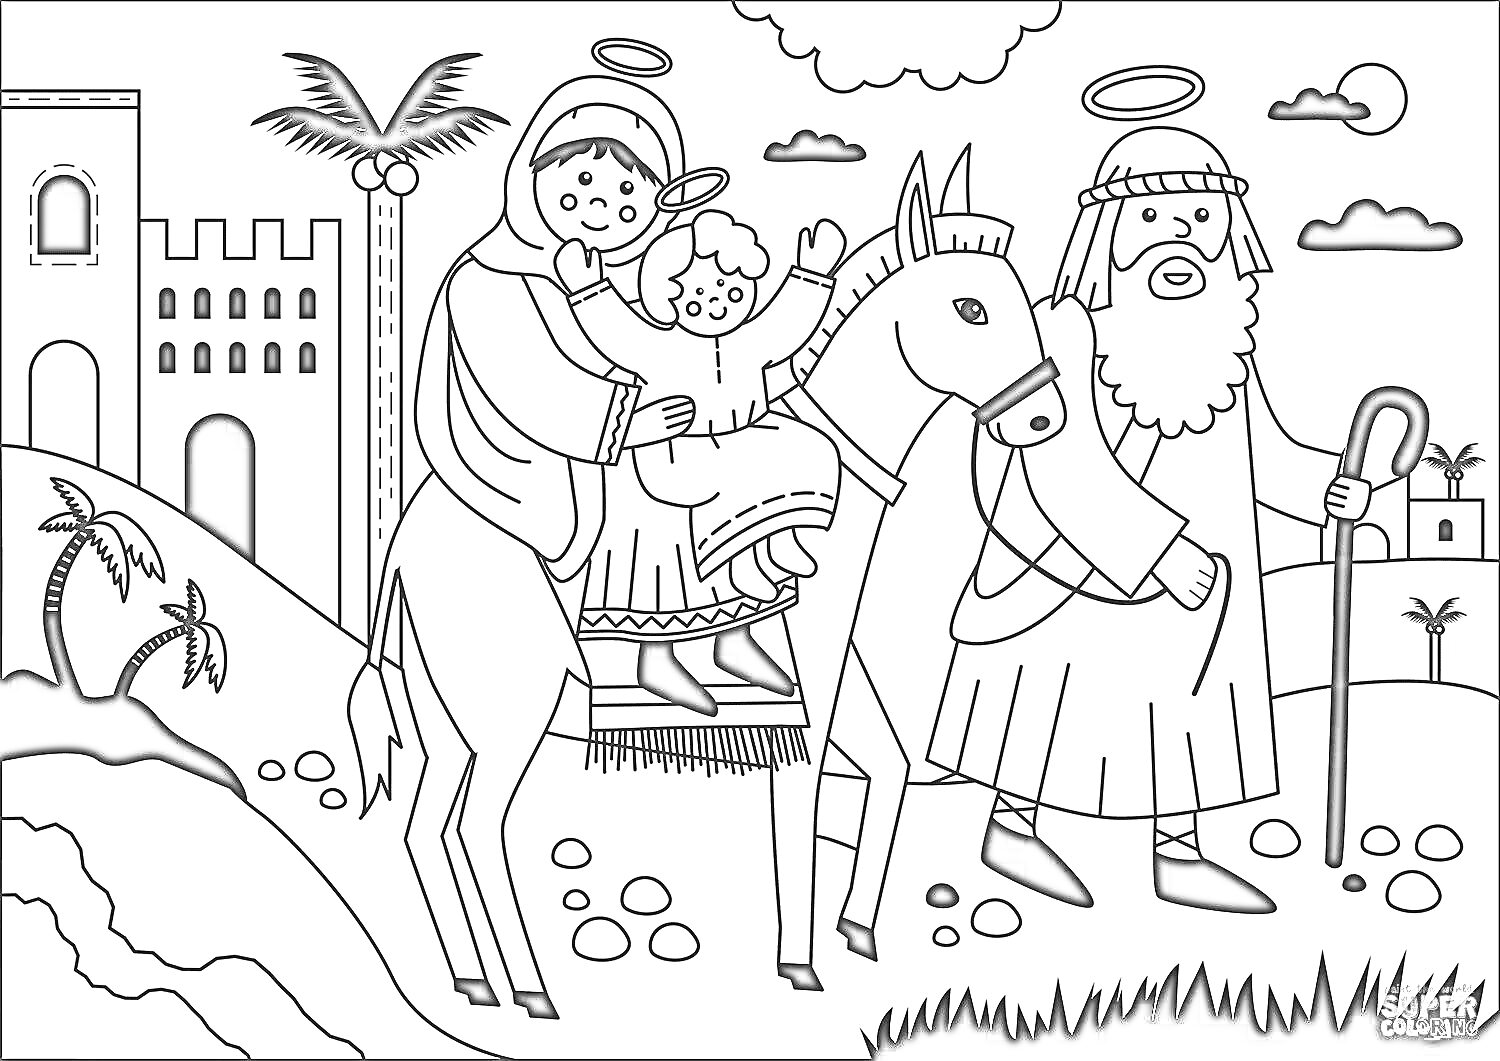 Раскраска Святое семейство на осле, Иосиф с посохом, пальмы, здания, холмы, облака